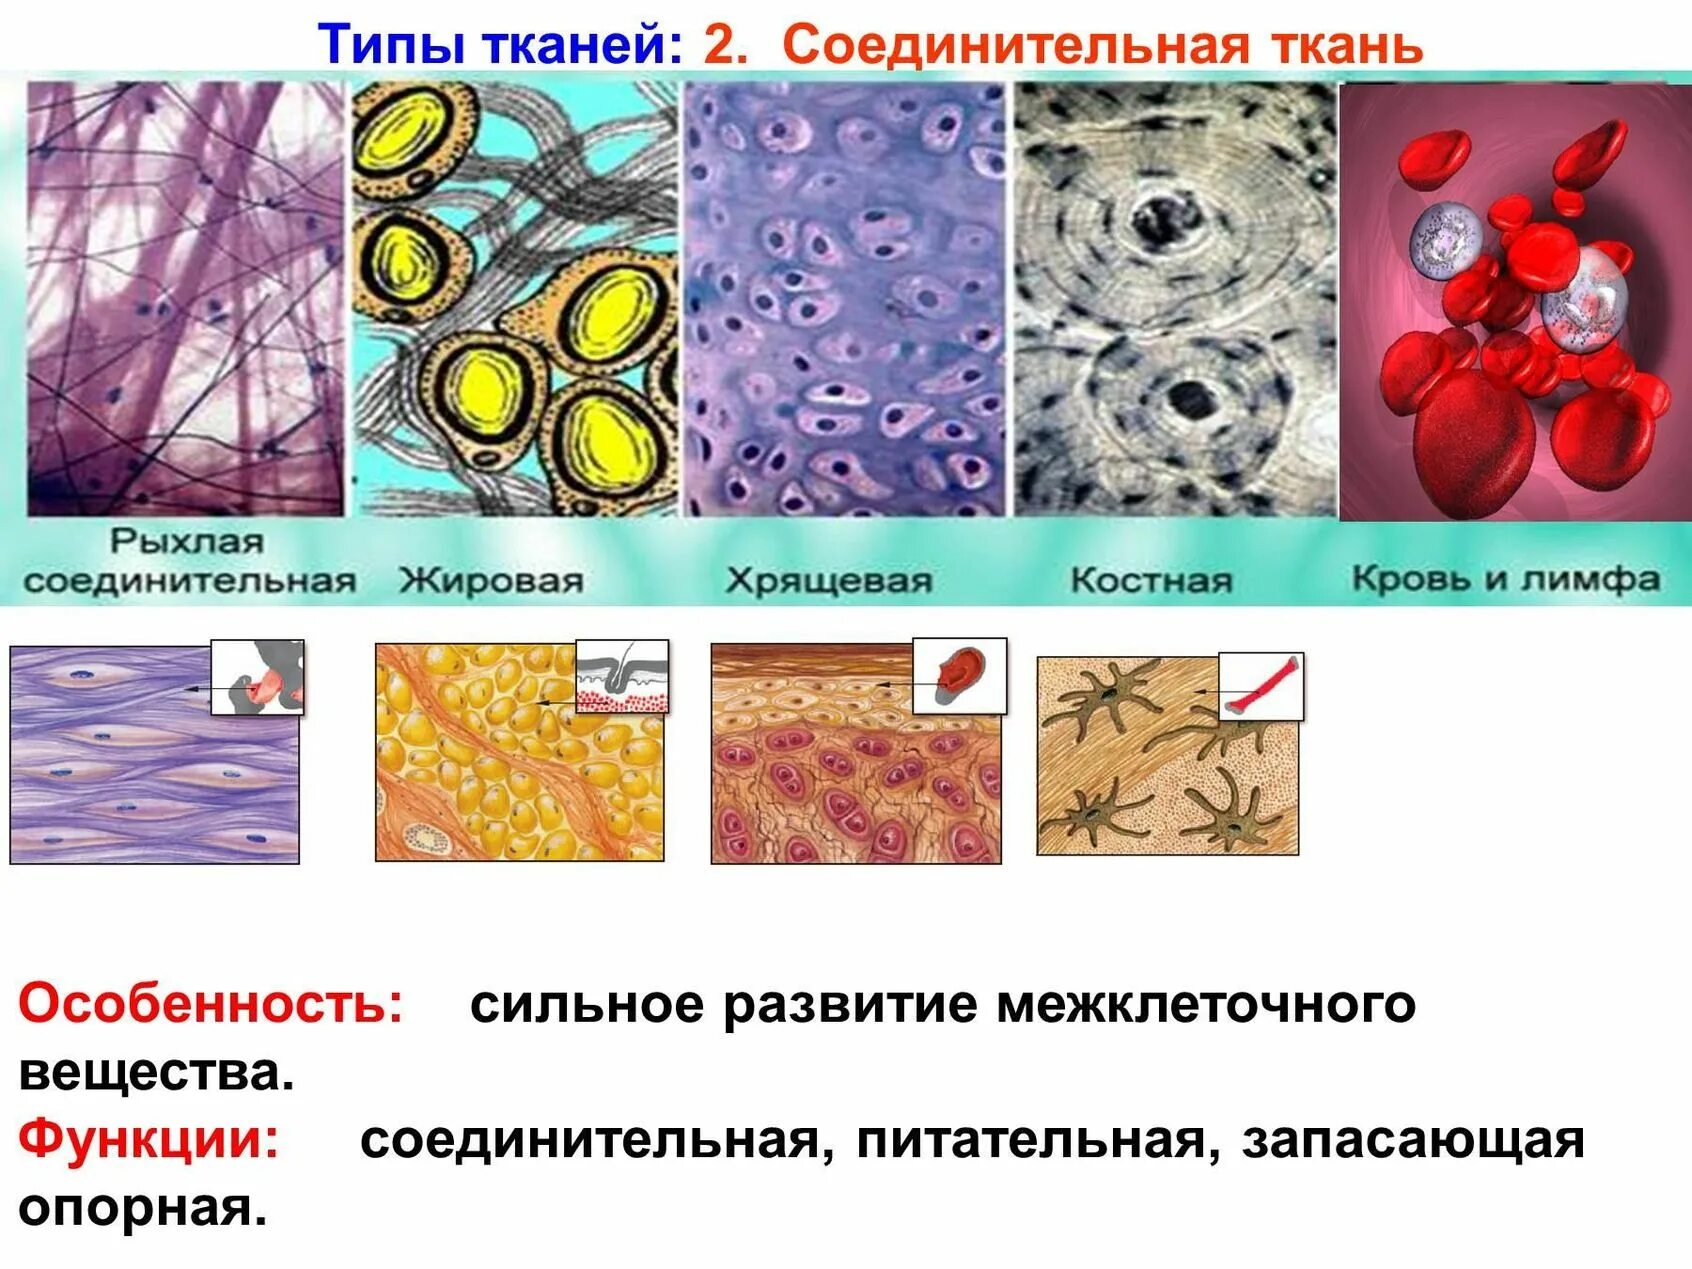 Ткань выполняющая опорную функцию организма. Типы строение соединительной ткани. Соединительные ткани строение клеток ткани. Строение разных типов соединительной ткани. Подвиды соединительной ткани.